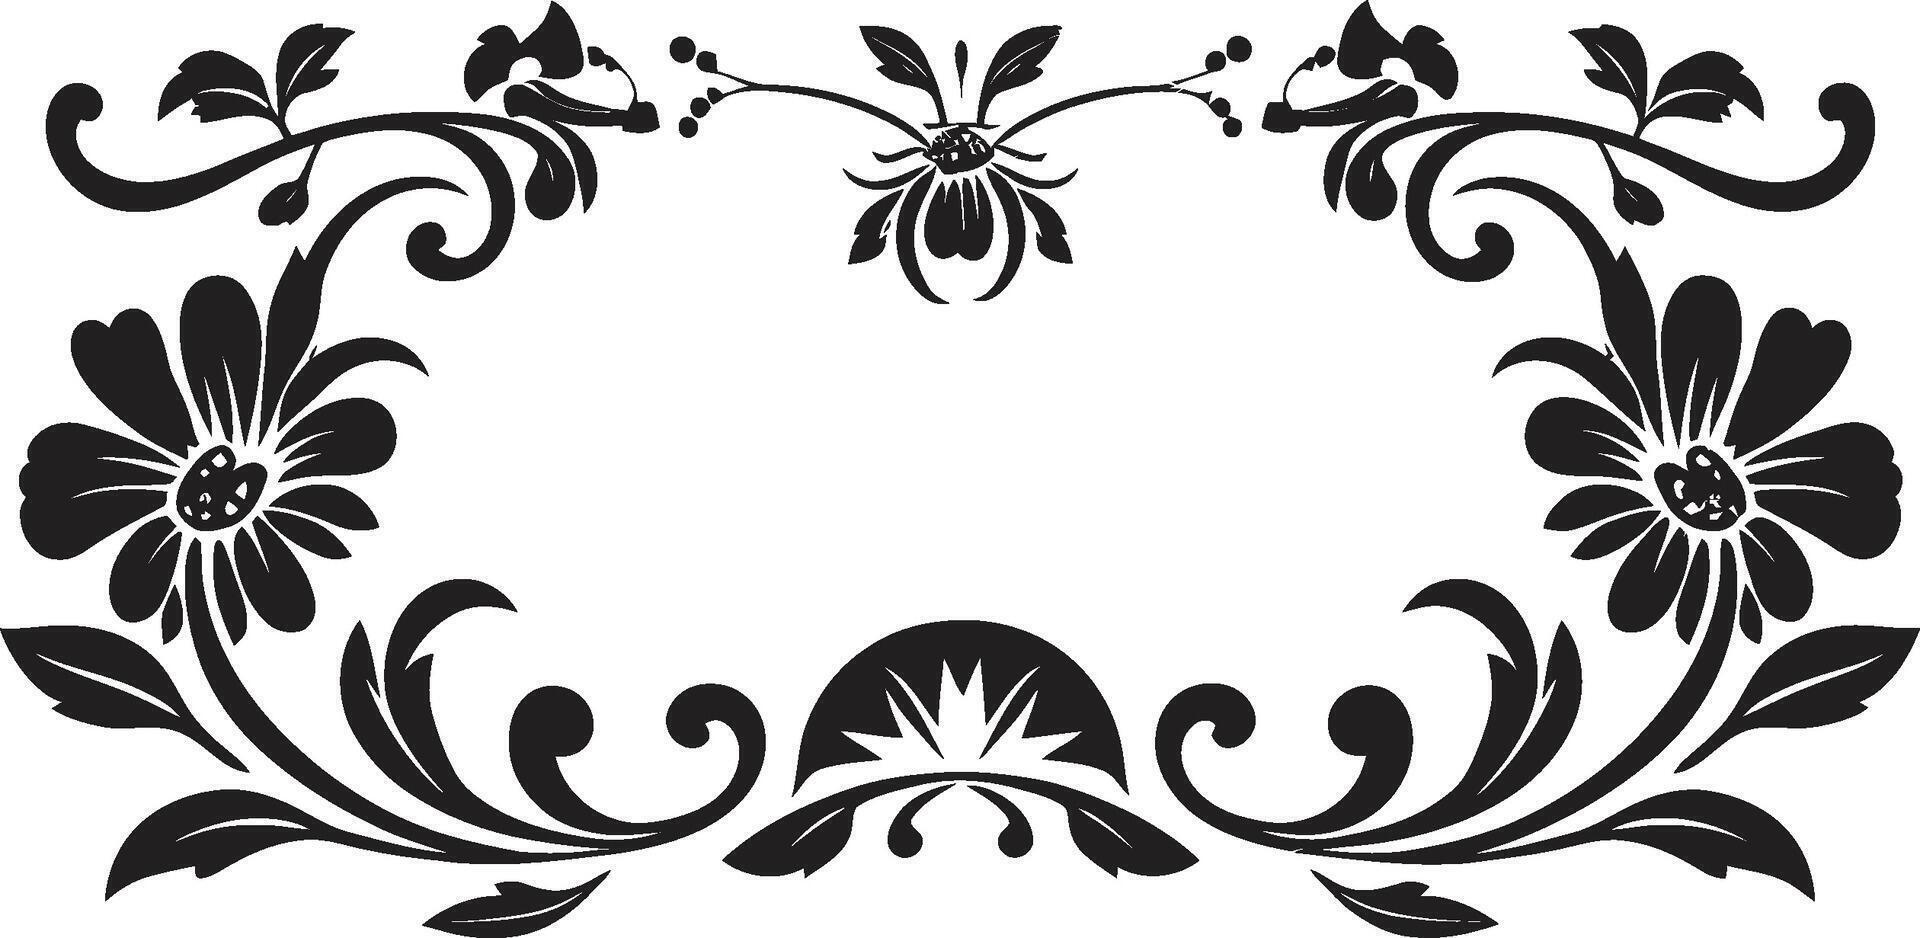 Retro Royalty Elegant Emblem with Monochrome European Border Noble Nostalgia Vintage European Border Logo in Sleek Black vector